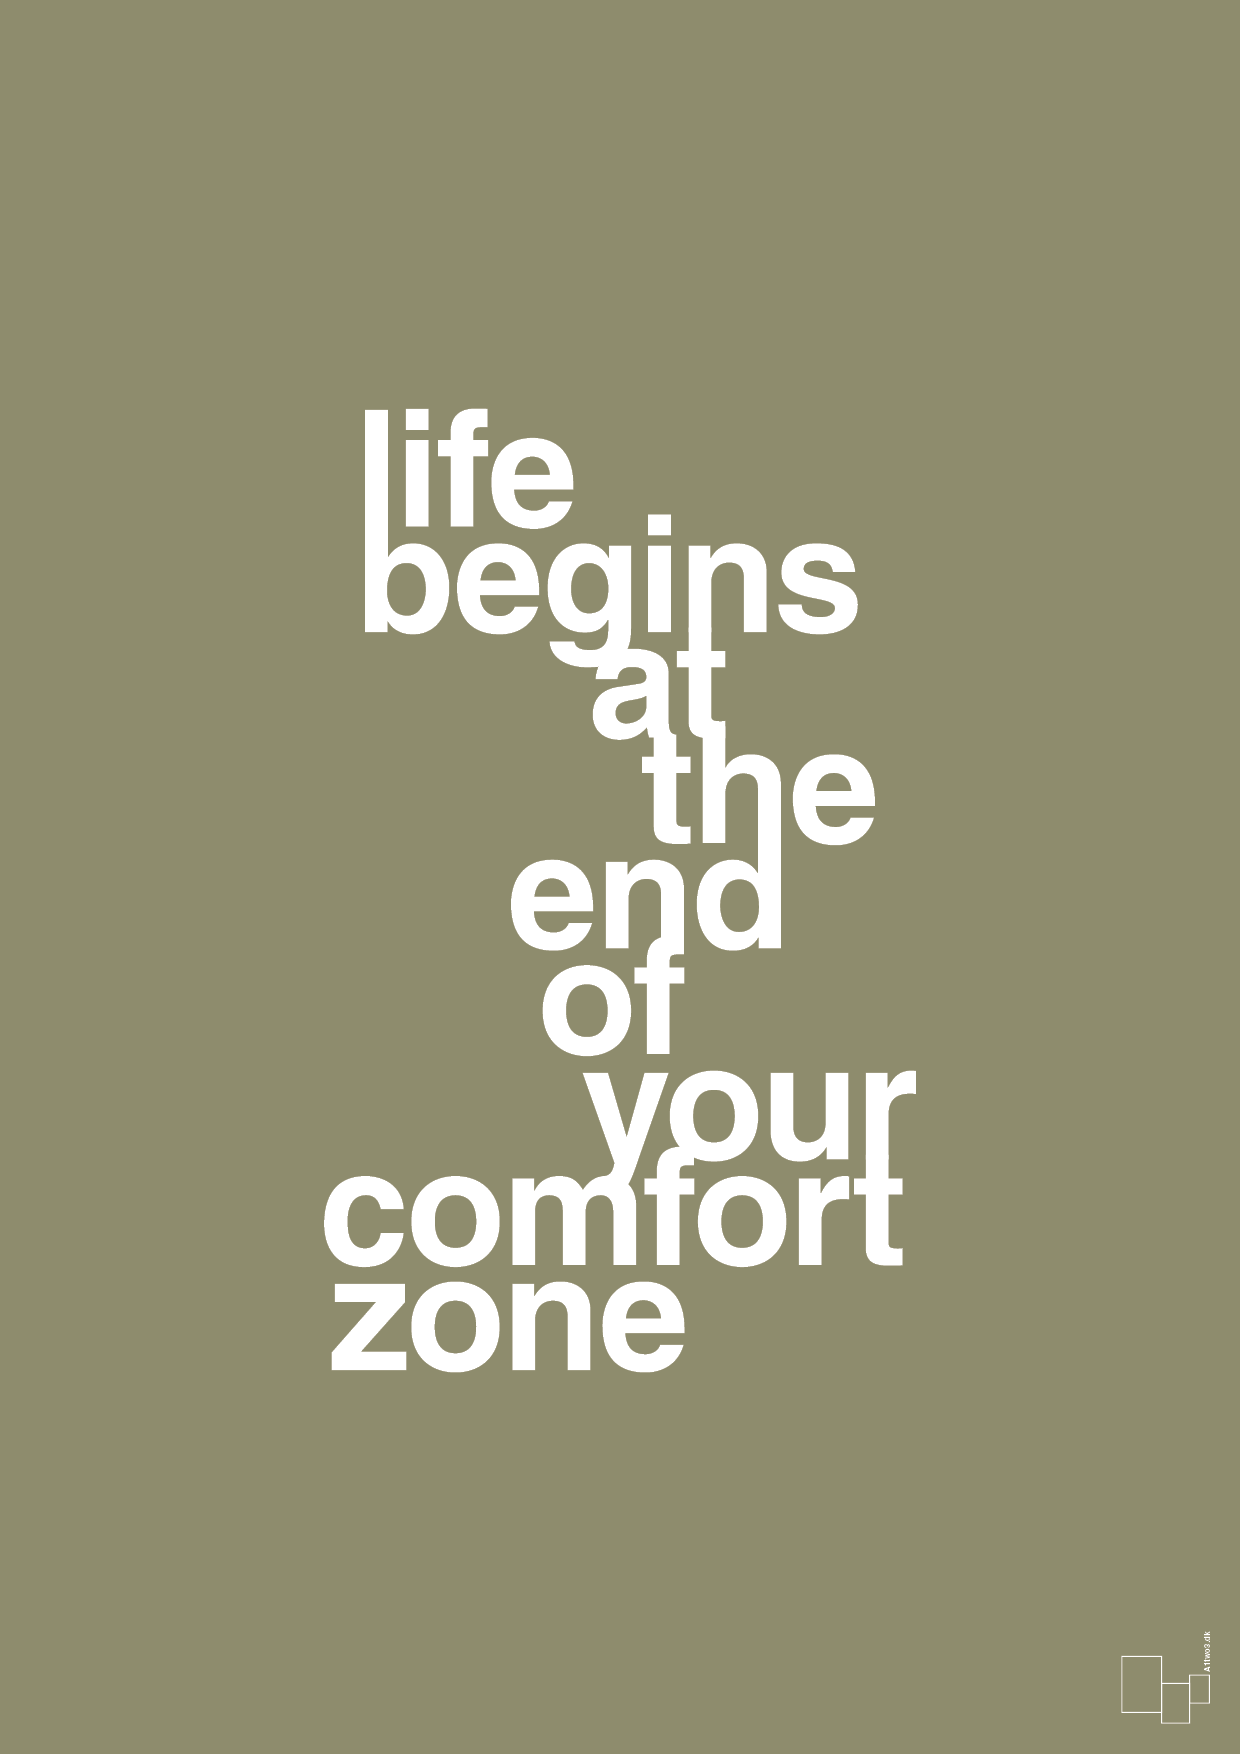 life begins at the end of your comfort zone - Plakat med Ordsprog i Misty Forrest